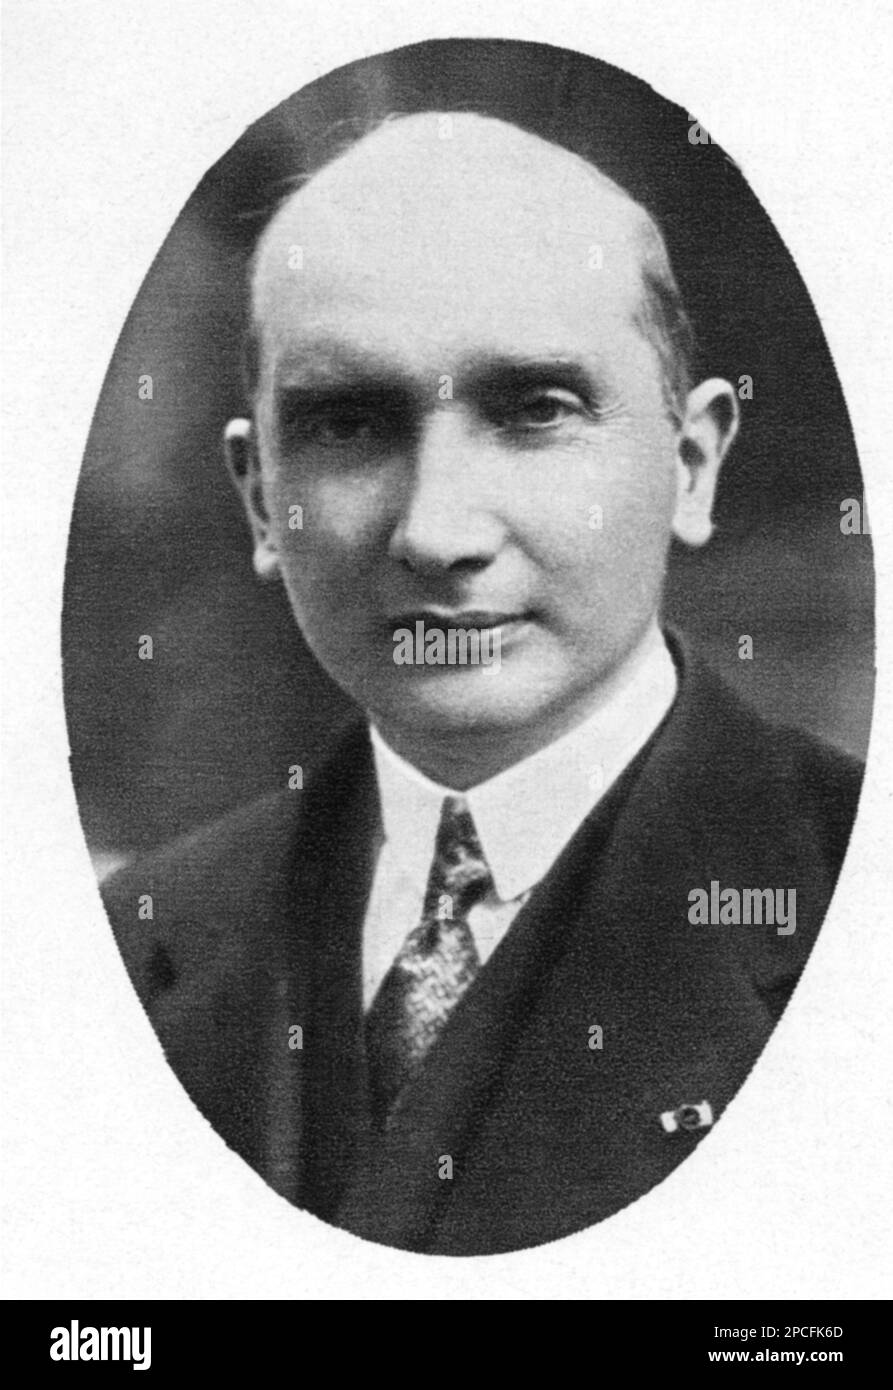 1928 : AOÛT ZALESKI ( ZALEWSKI , 1883 – 1972 ) était un économiste polonais , un homme politique et un diplomate . Ministre des affaires étrangères de la République de Pologne, il a été président de la Pologne au sein du gouvernement polonais en exil . - POLITICO - POLITICA - POLITIC - foto storiche - foto storica - portrait - ritratto - HISTOIRE - POLOGNE - POLONIA - col - colletto - cravate - cravatta ---- Archivio GBB Banque D'Images